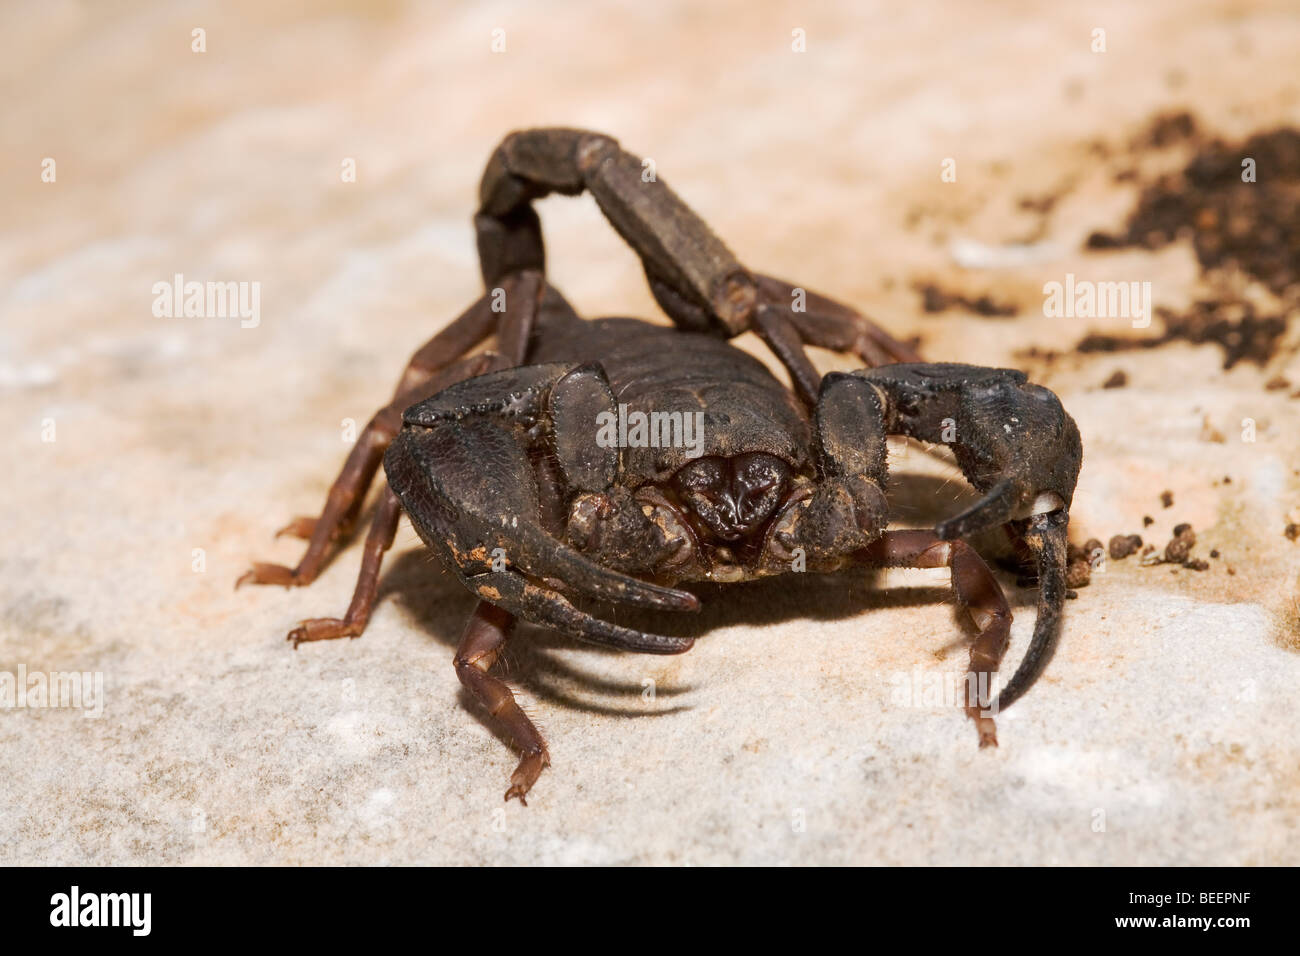 Large brown scorpion, Iurus dufoureius, in Greece Stock Photo